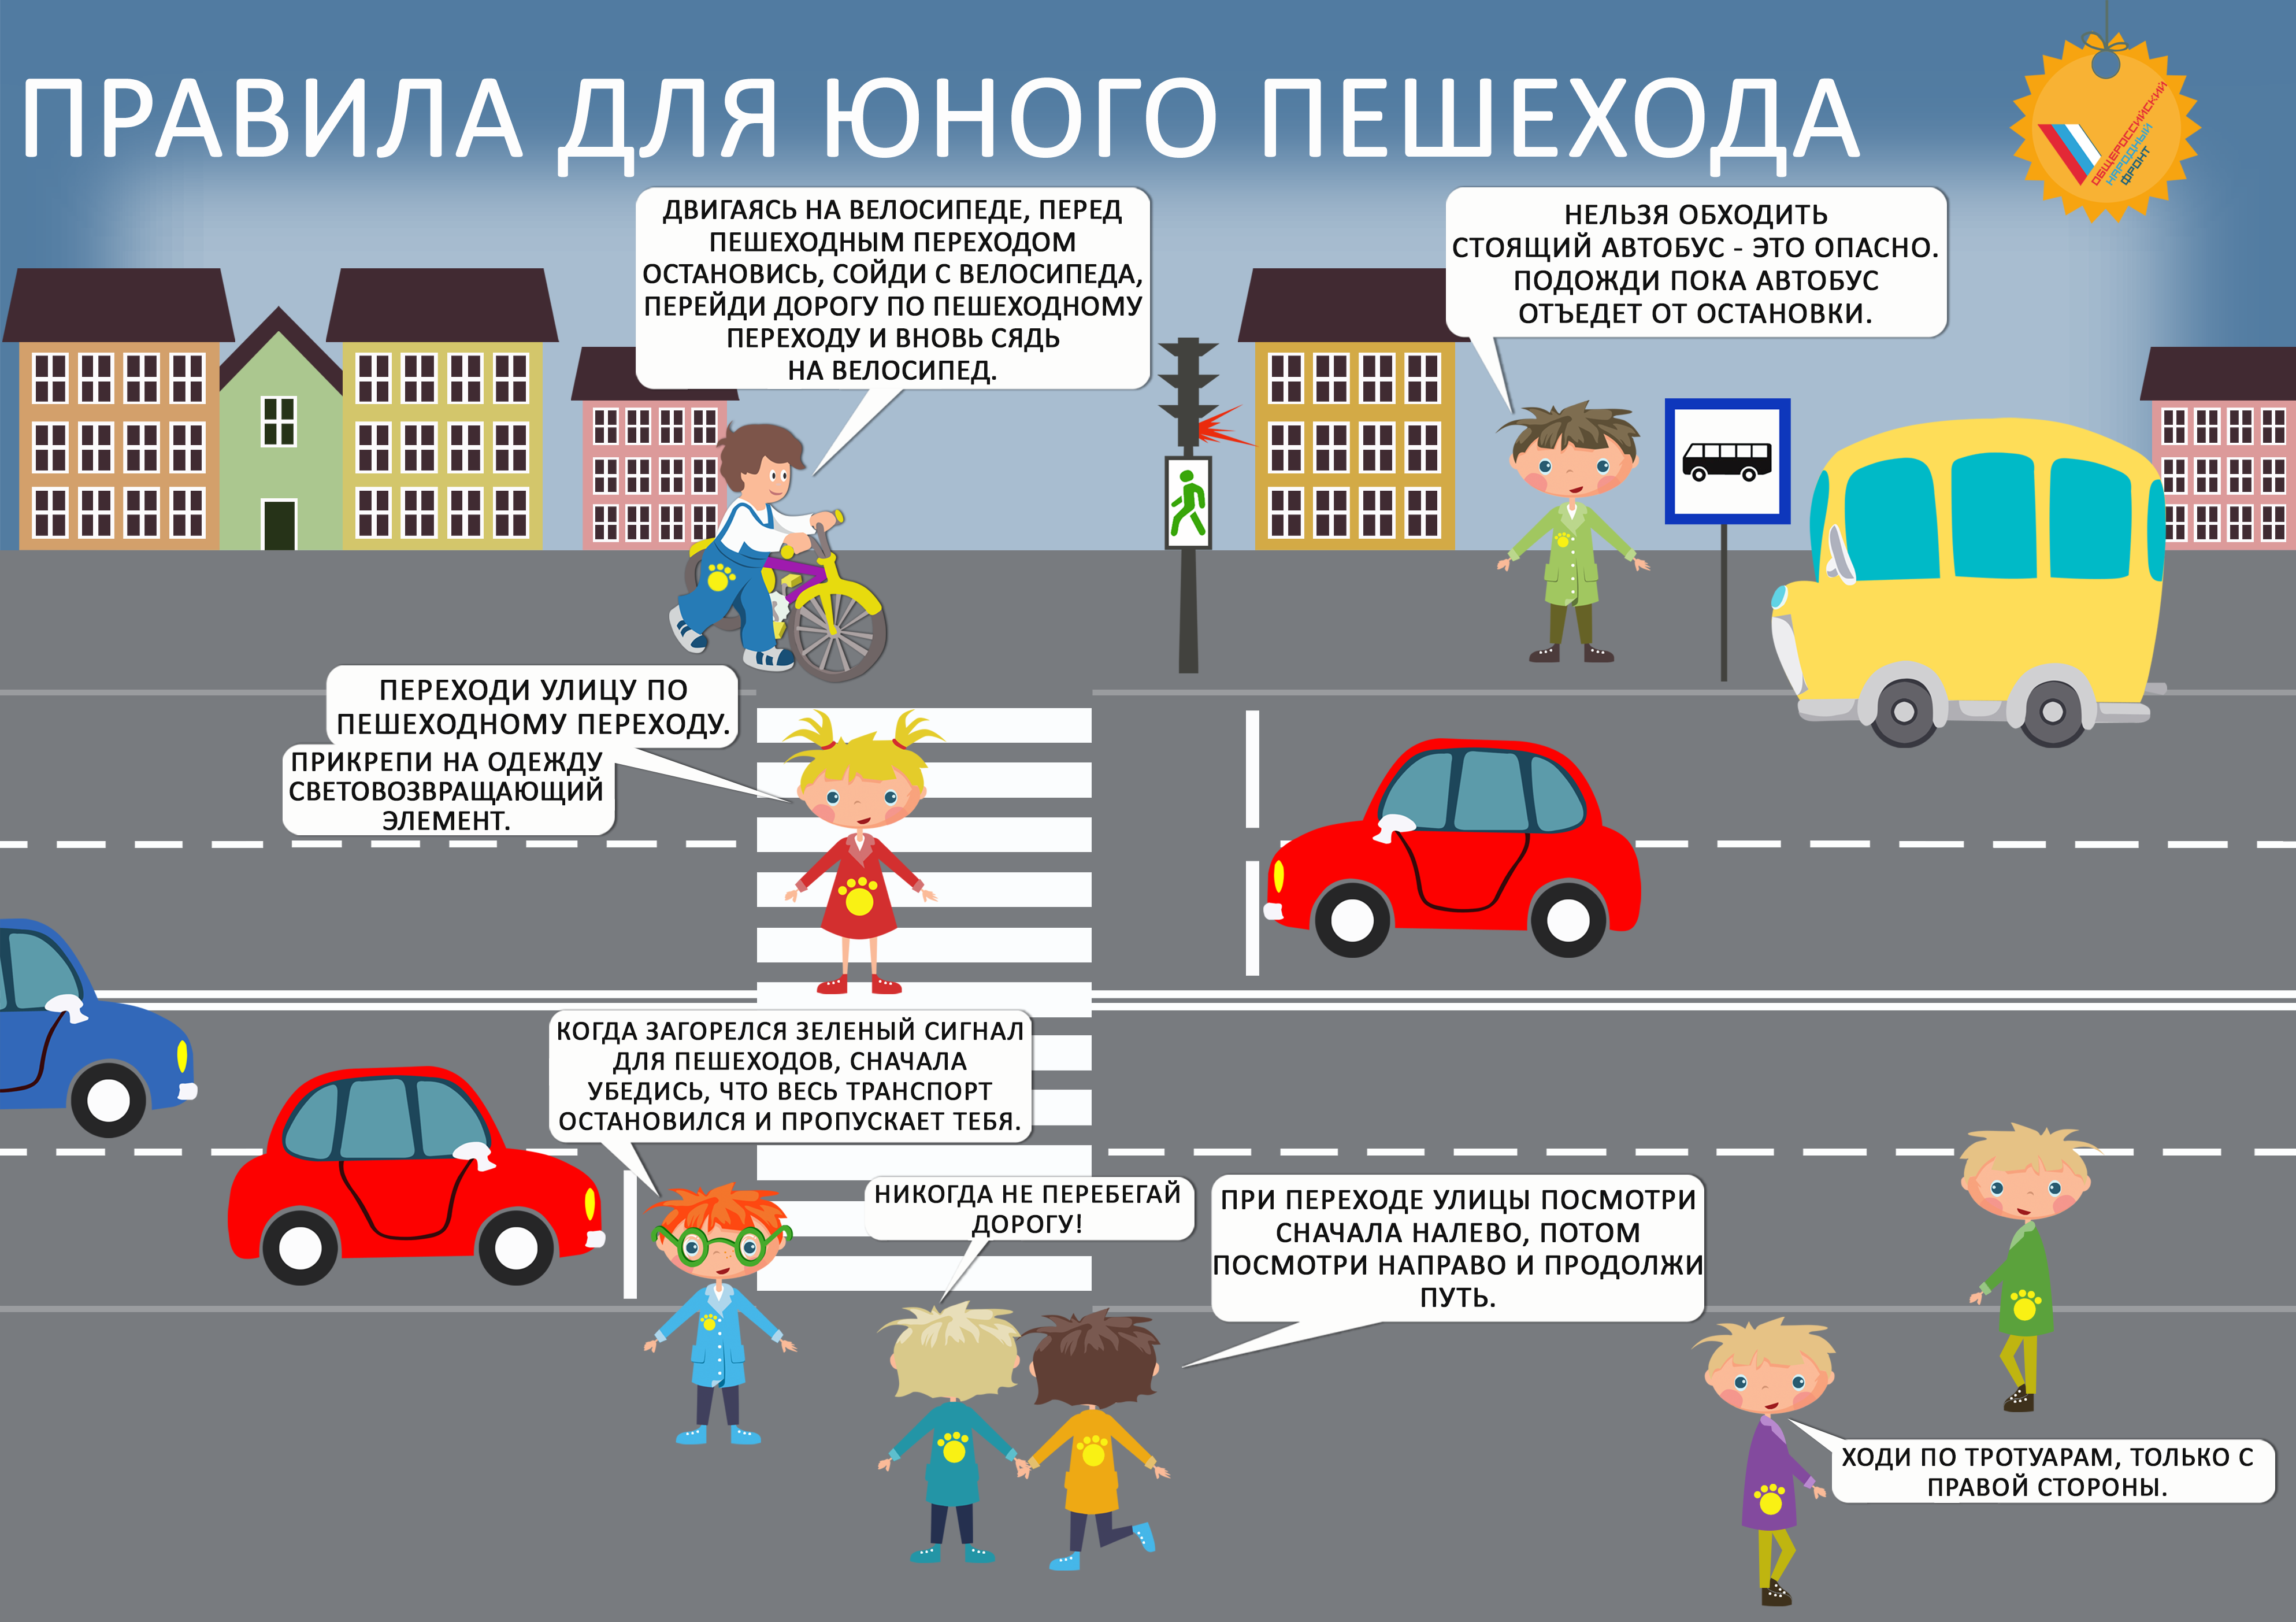 Транспортная доступность и безопасность пешеходов. Правила дорожного движения для детей. Правила дорожного движения для пешеходов. Правила дорожного движения для пешеходов для детей. ПДД картинки для детей.